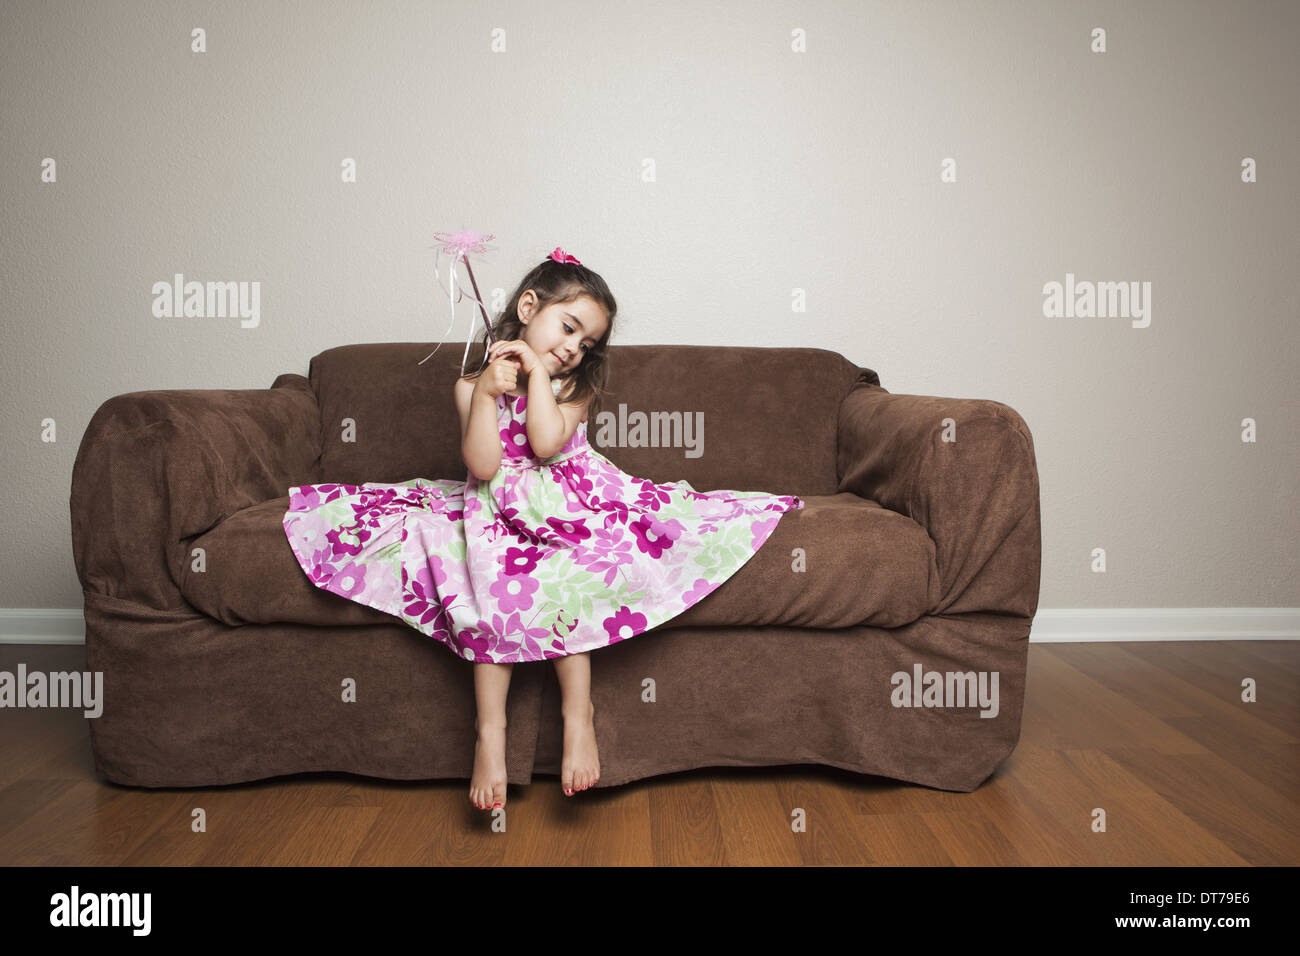 Une fillette de 3 ans avec de longs cheveux bruns dans une robe de coton fleuri rose avec la jupe distribués, en agitant une baguette. Banque D'Images